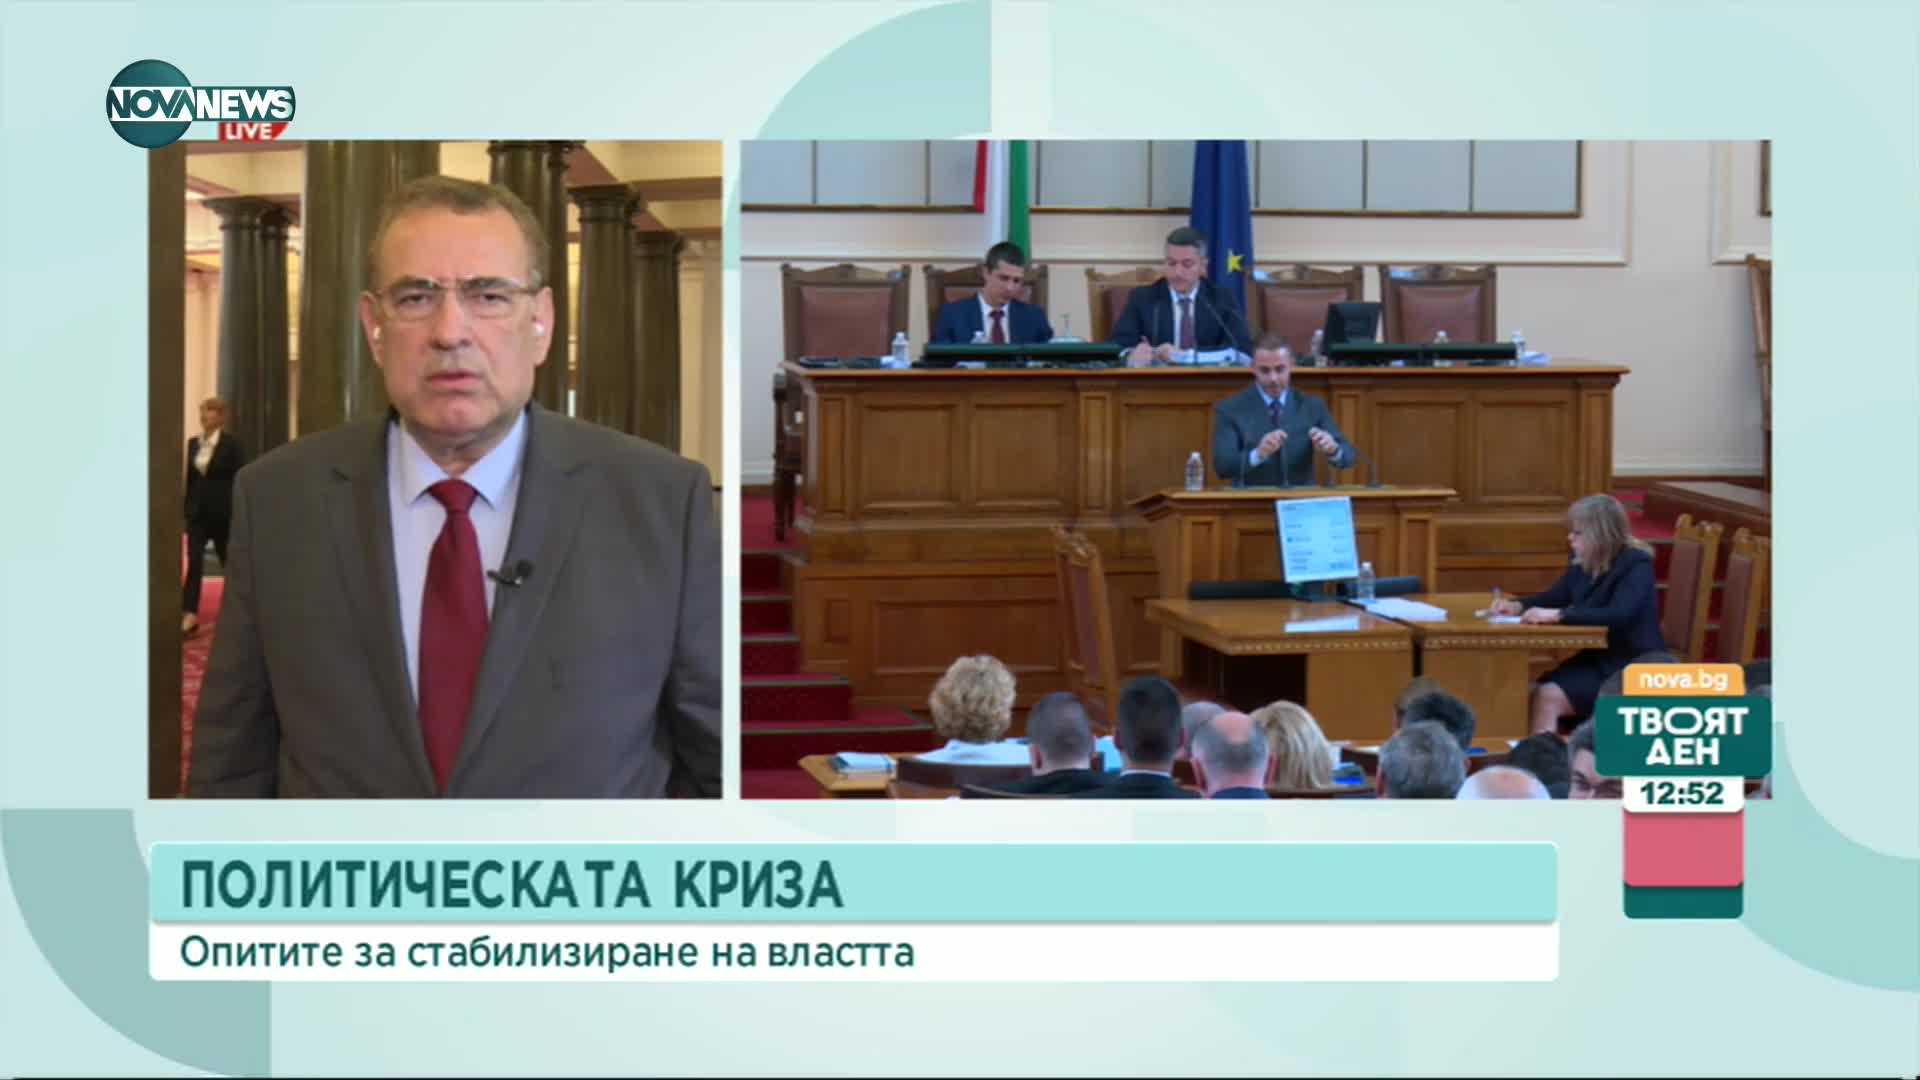 Чакъров, ДПС: Ние ще гласуваме "за" оставката на това правителство